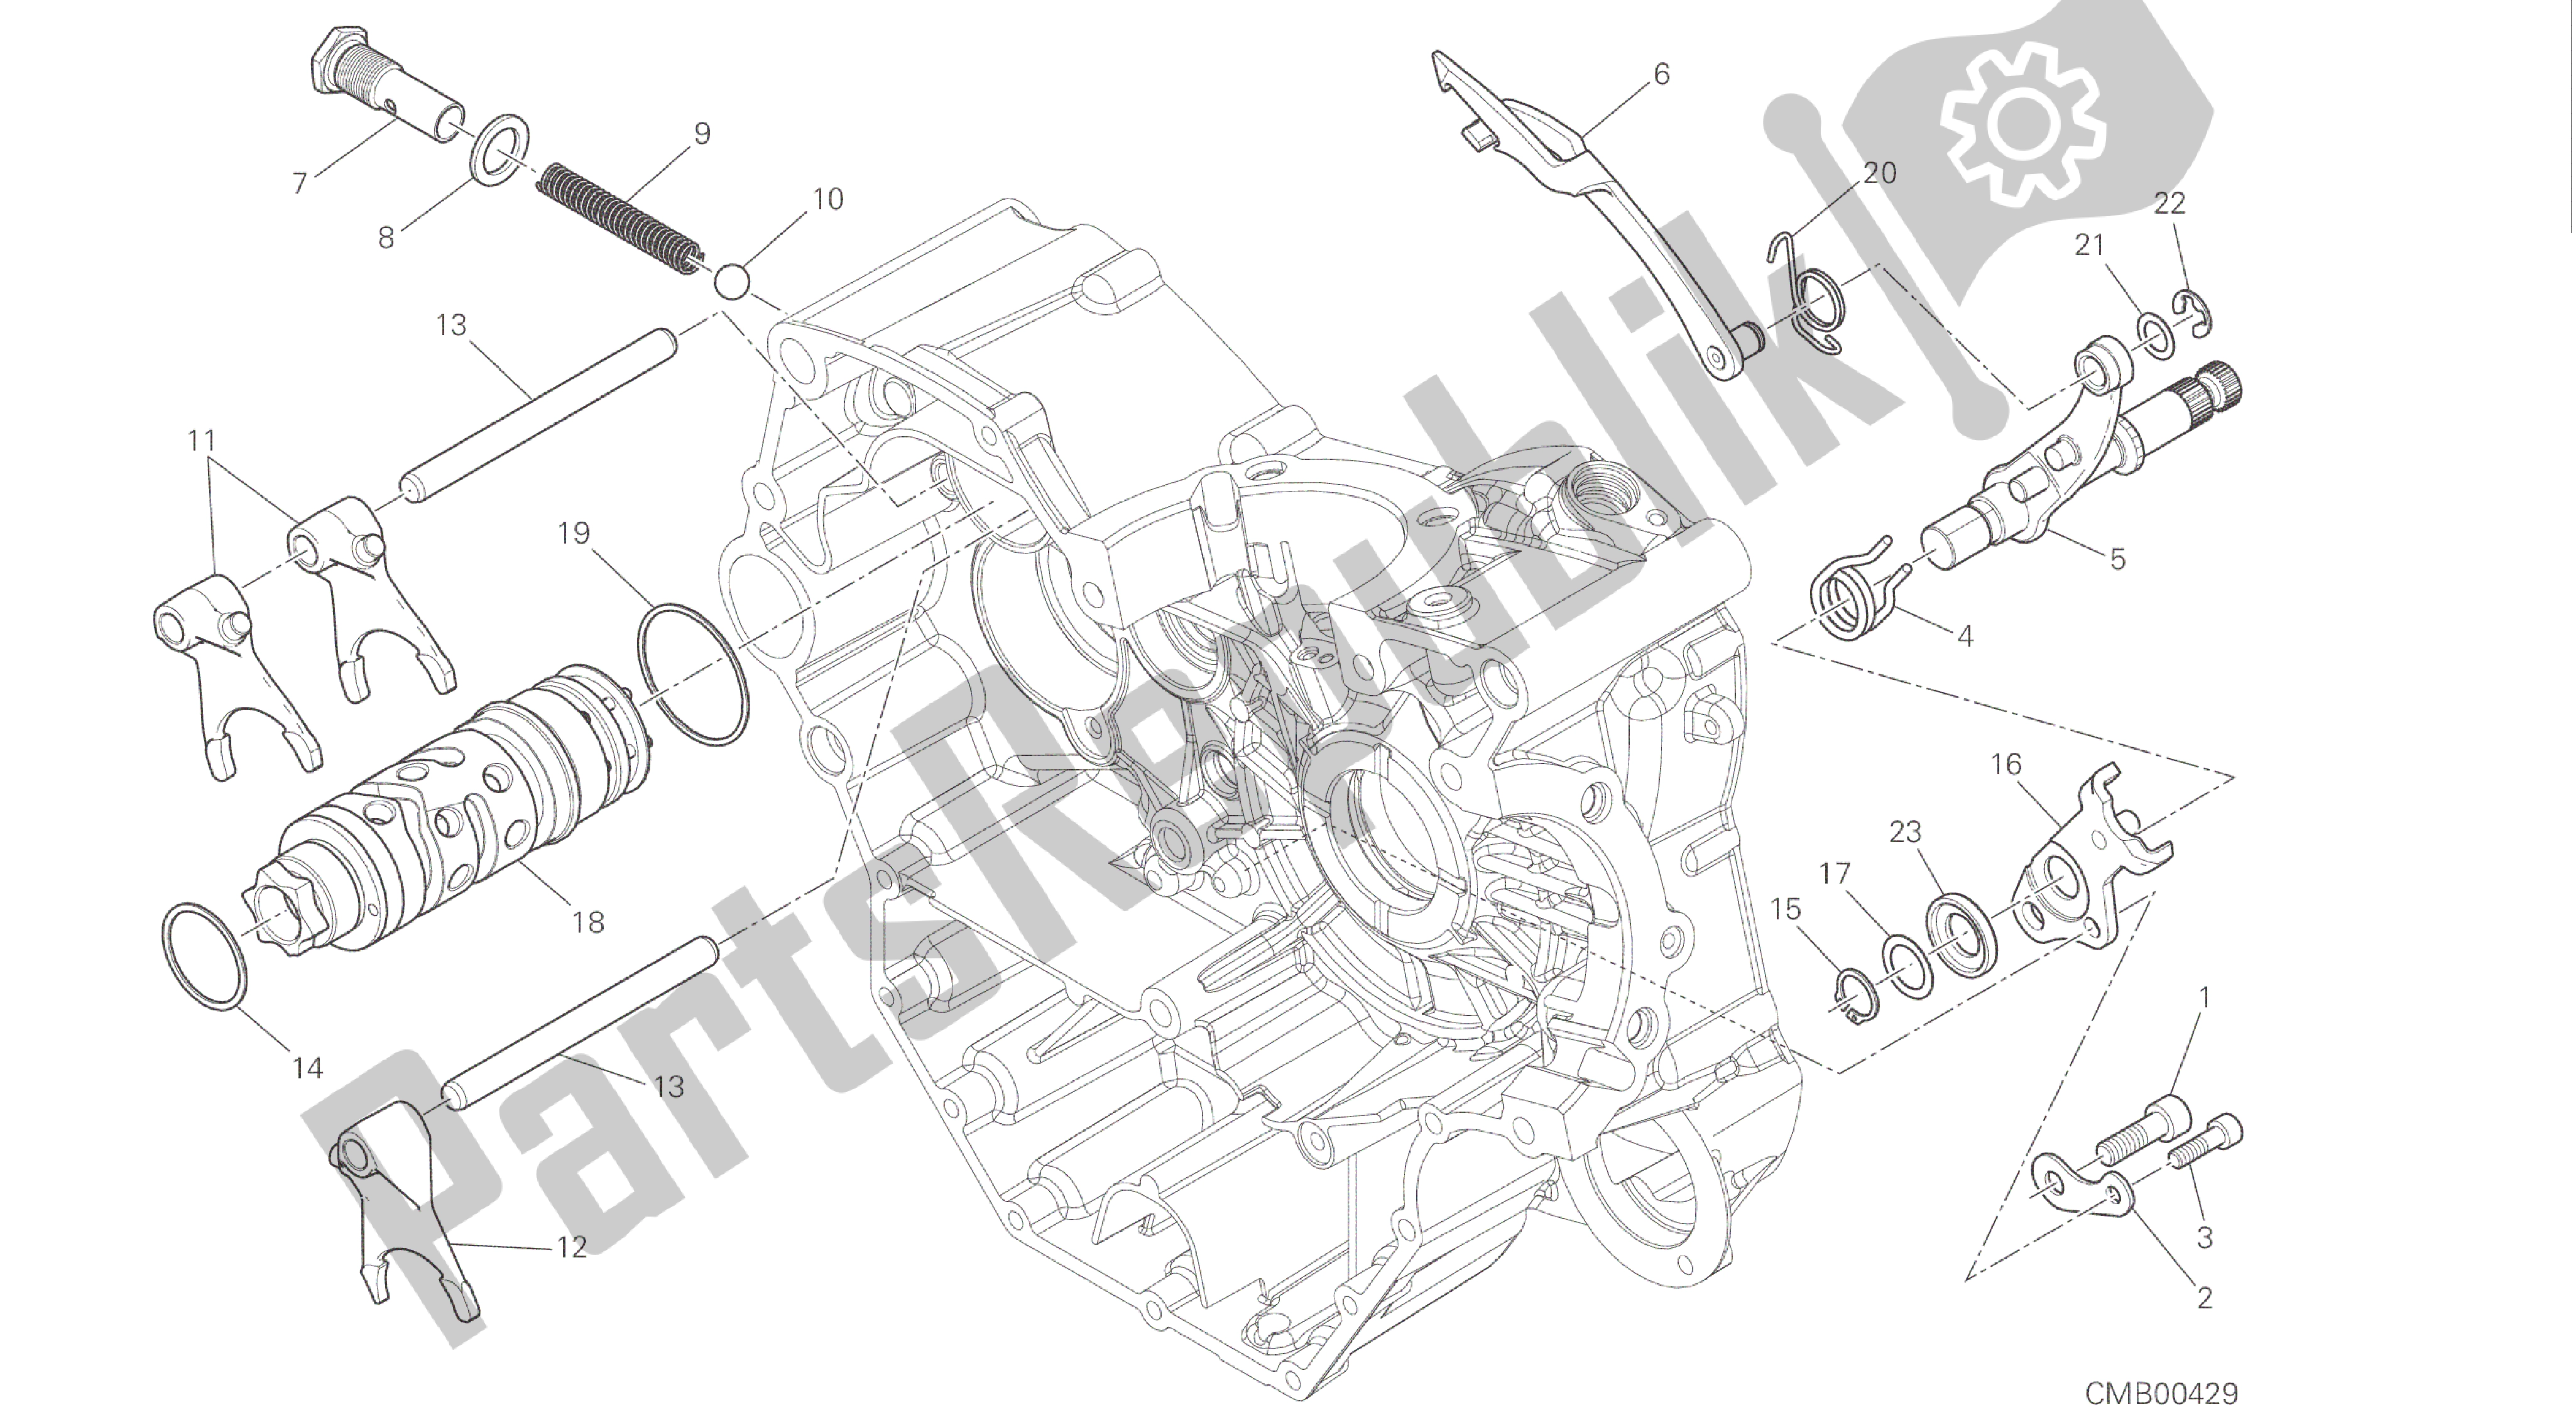 Toutes les pièces pour le Dessin 002 - Came De Changement De Vitesse - Fourche [mod: Hym-sp; Xst: Aus, Eur, Fra, Jap] Moteur De Groupe du Ducati Hypermotard SP 821 2015